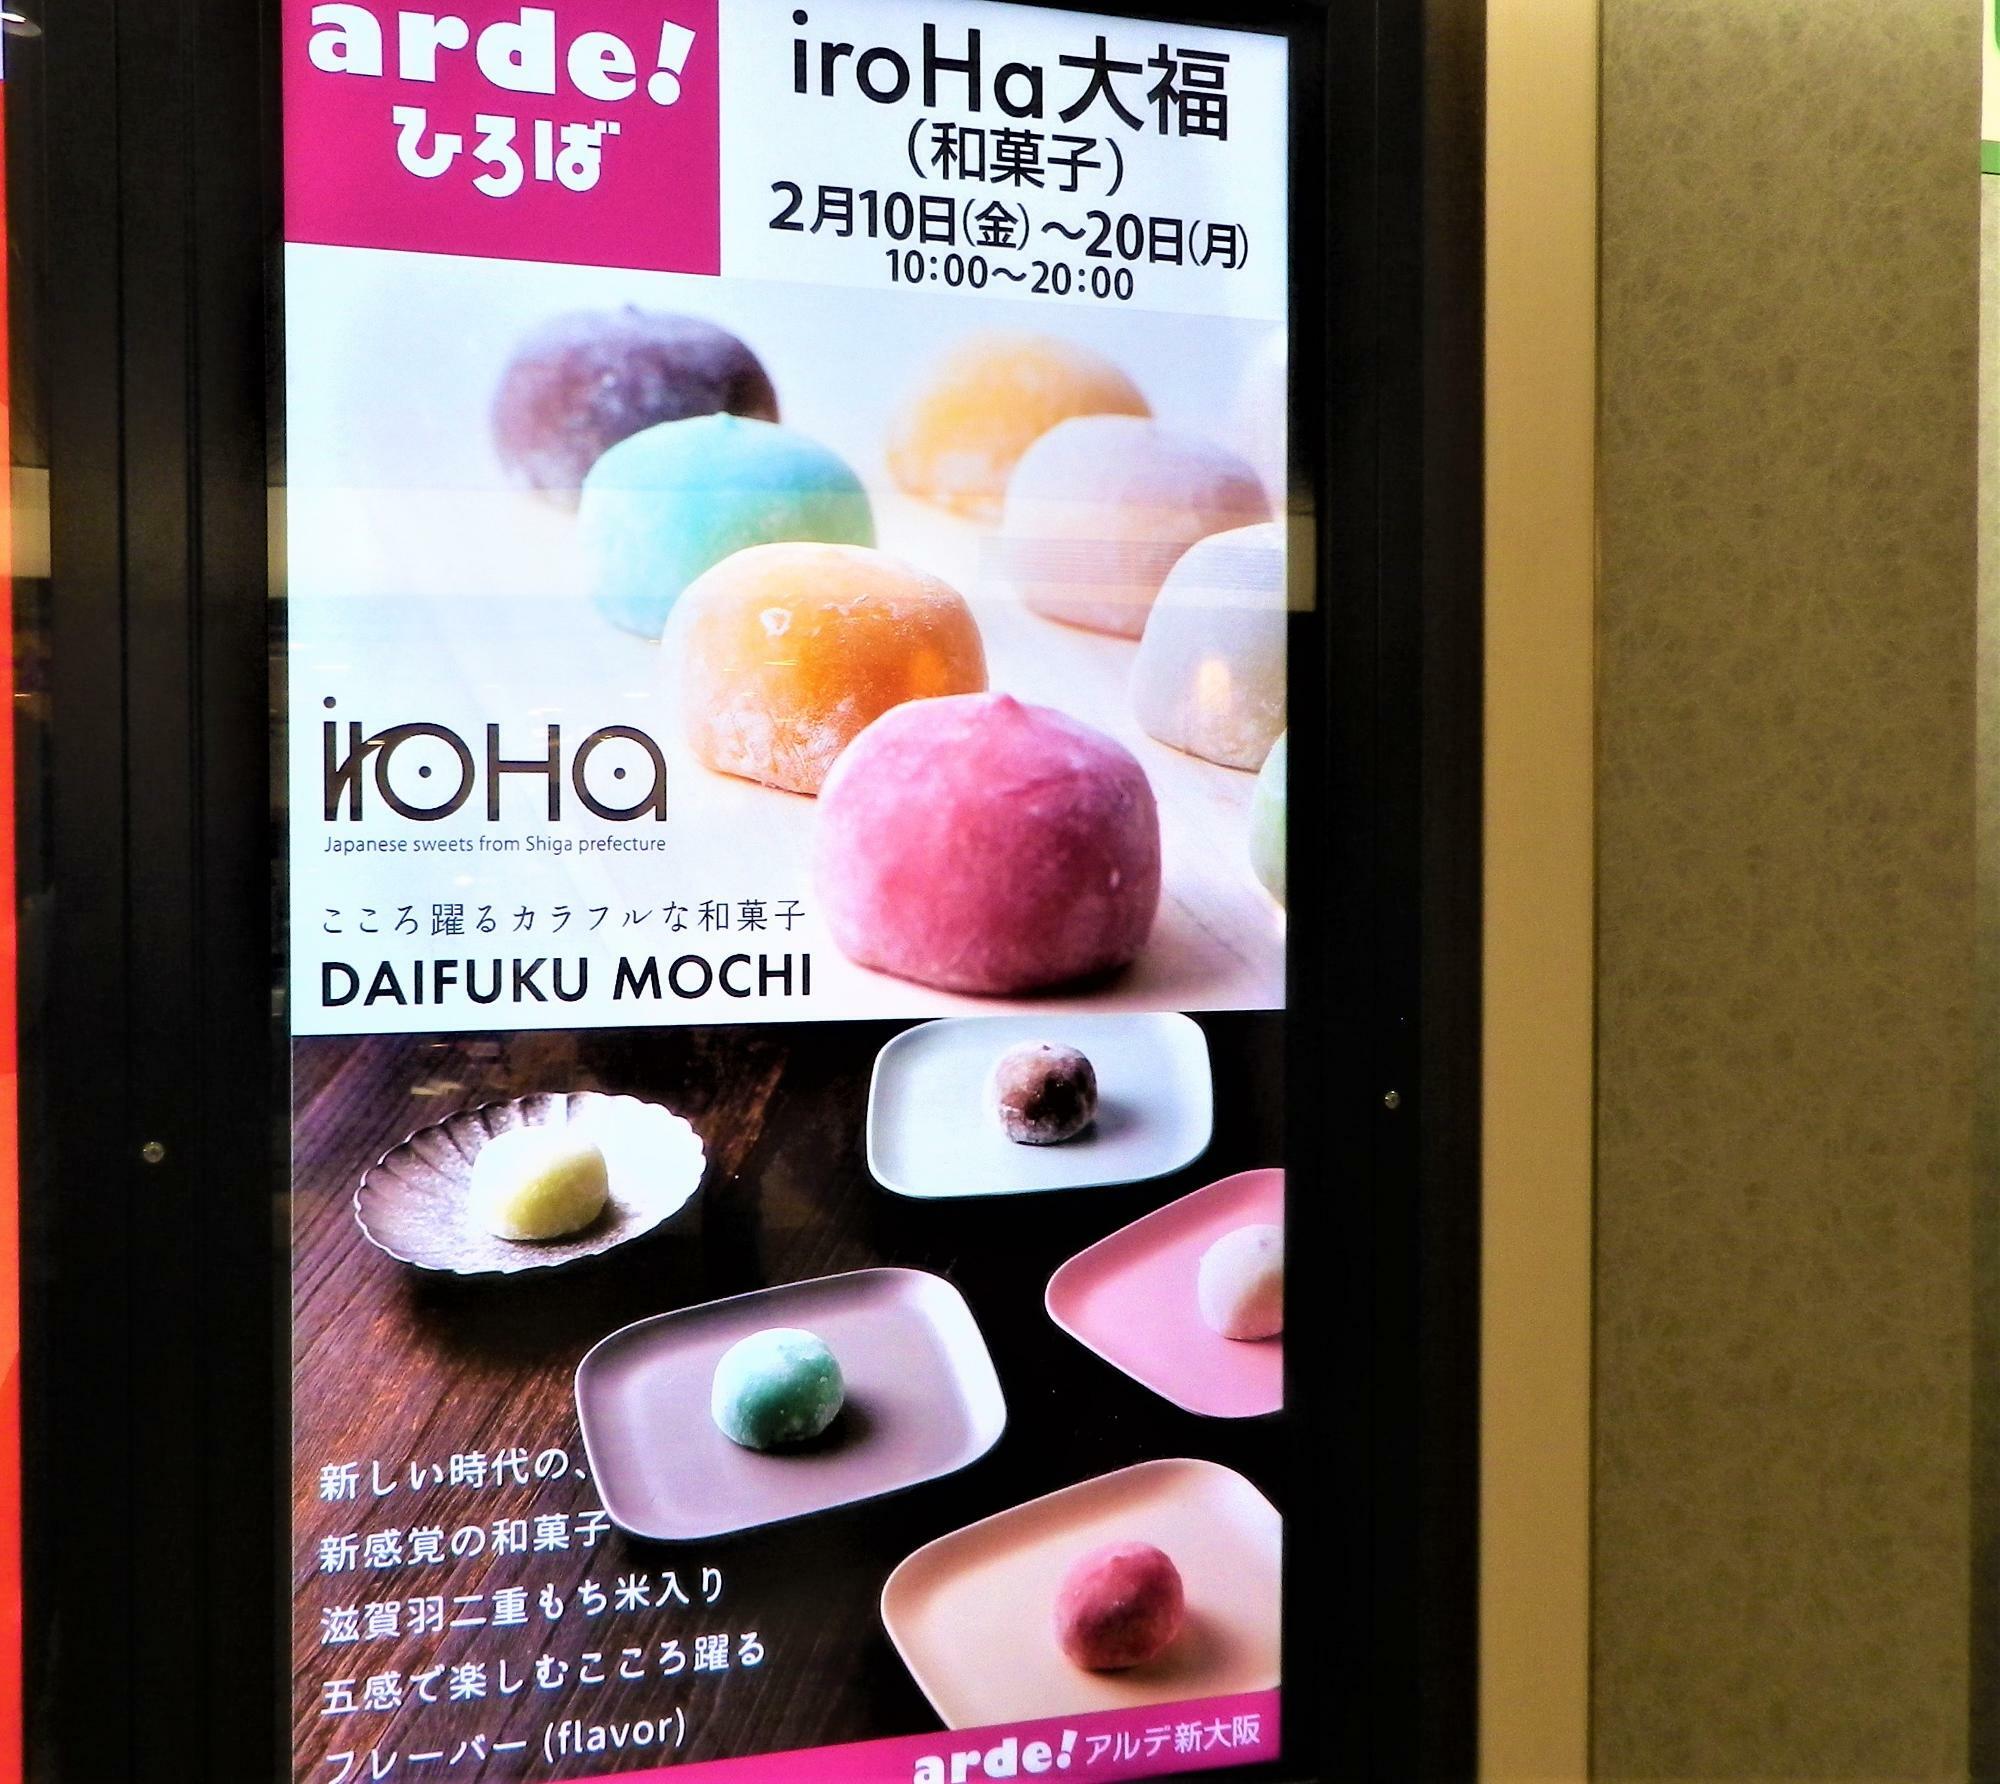 新大阪駅のあちこちに掲示されている「iroHa大福」のイベント案内。